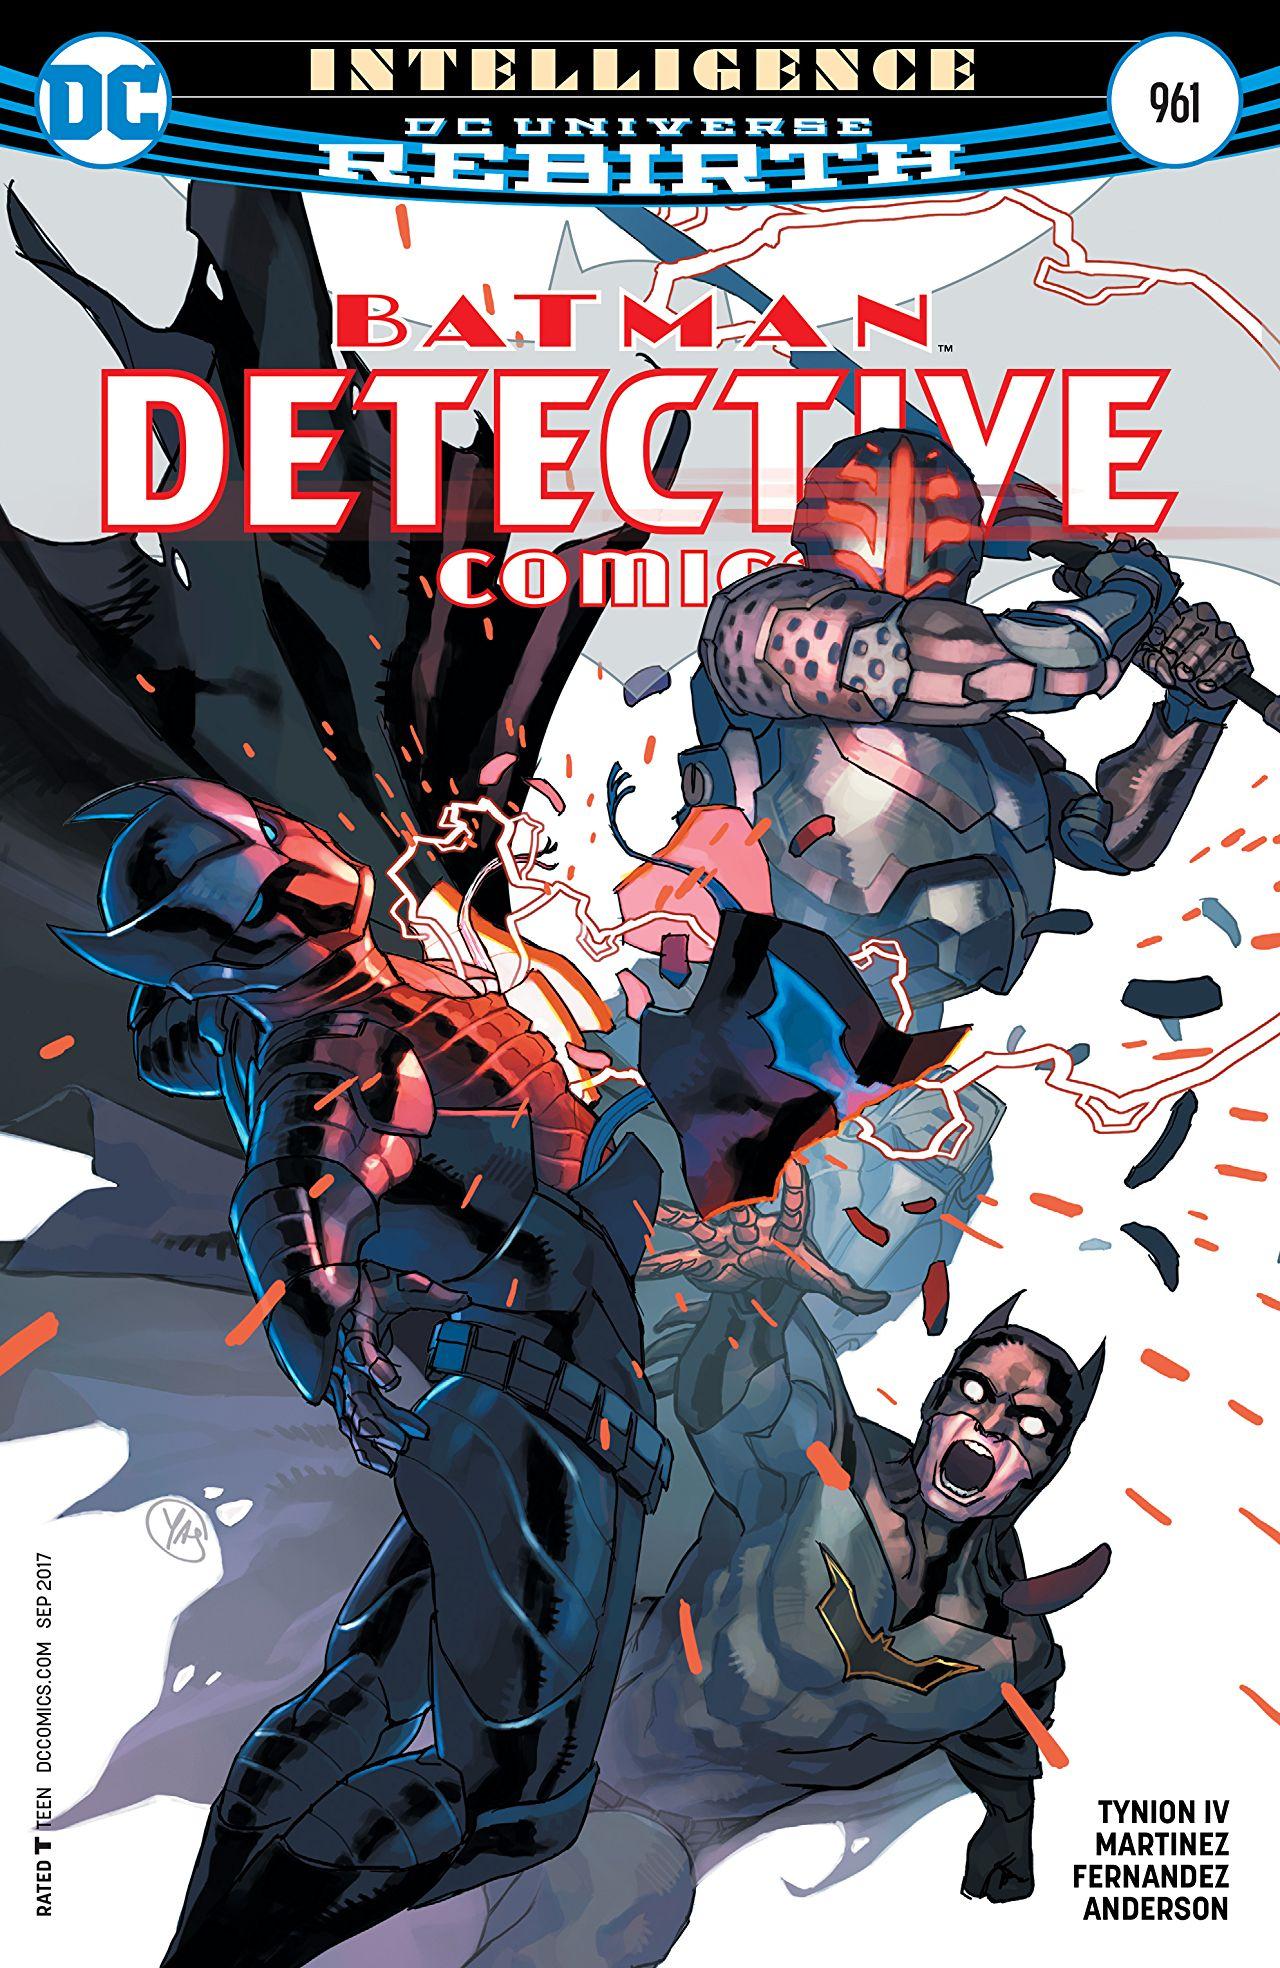 Detective Comics Vol. 1 #961